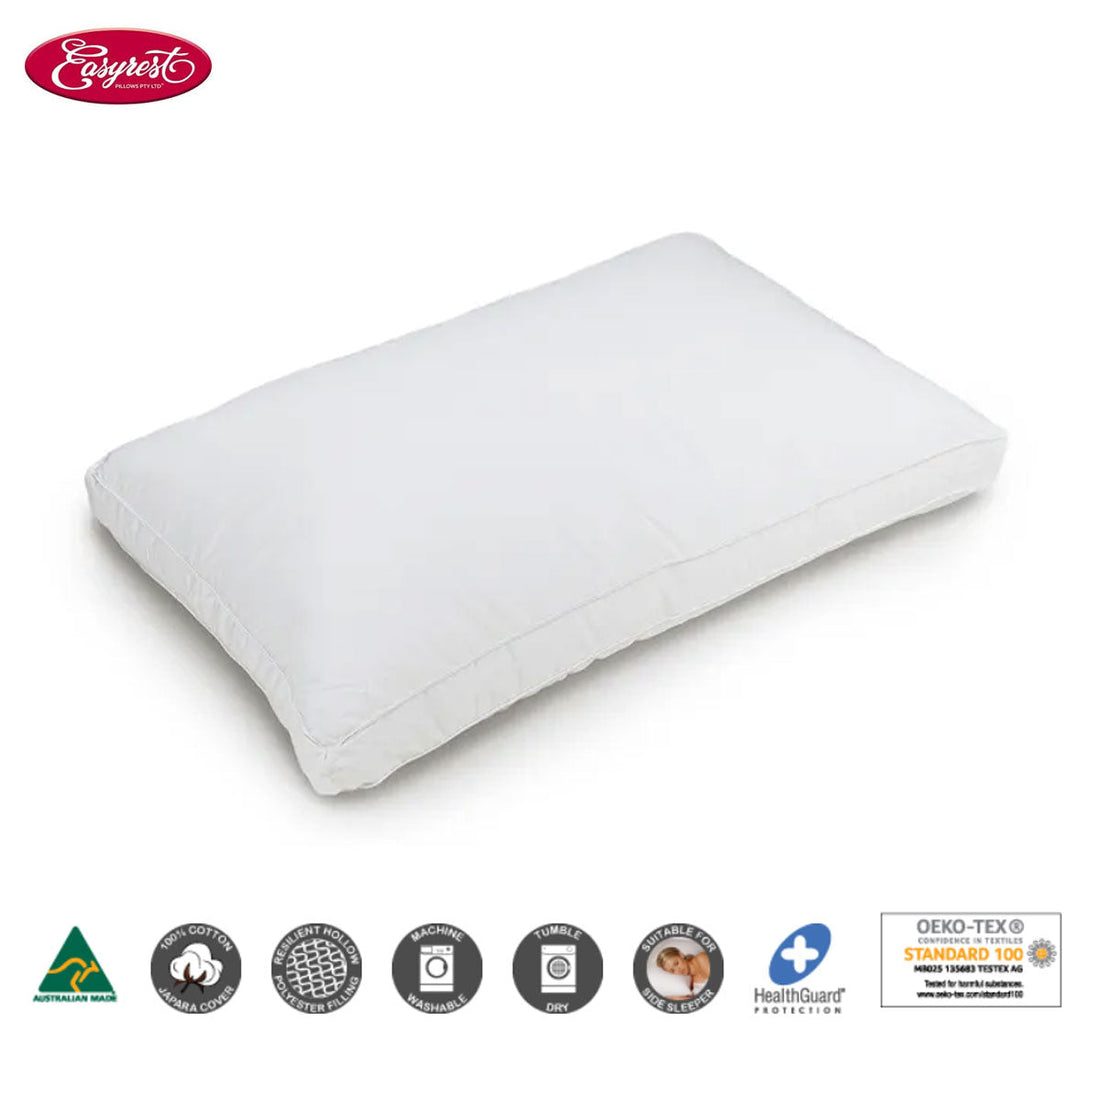 BioFresh Allergy Sensitive High &amp; Firm Standard Pillow 66 x 41 x 5cm